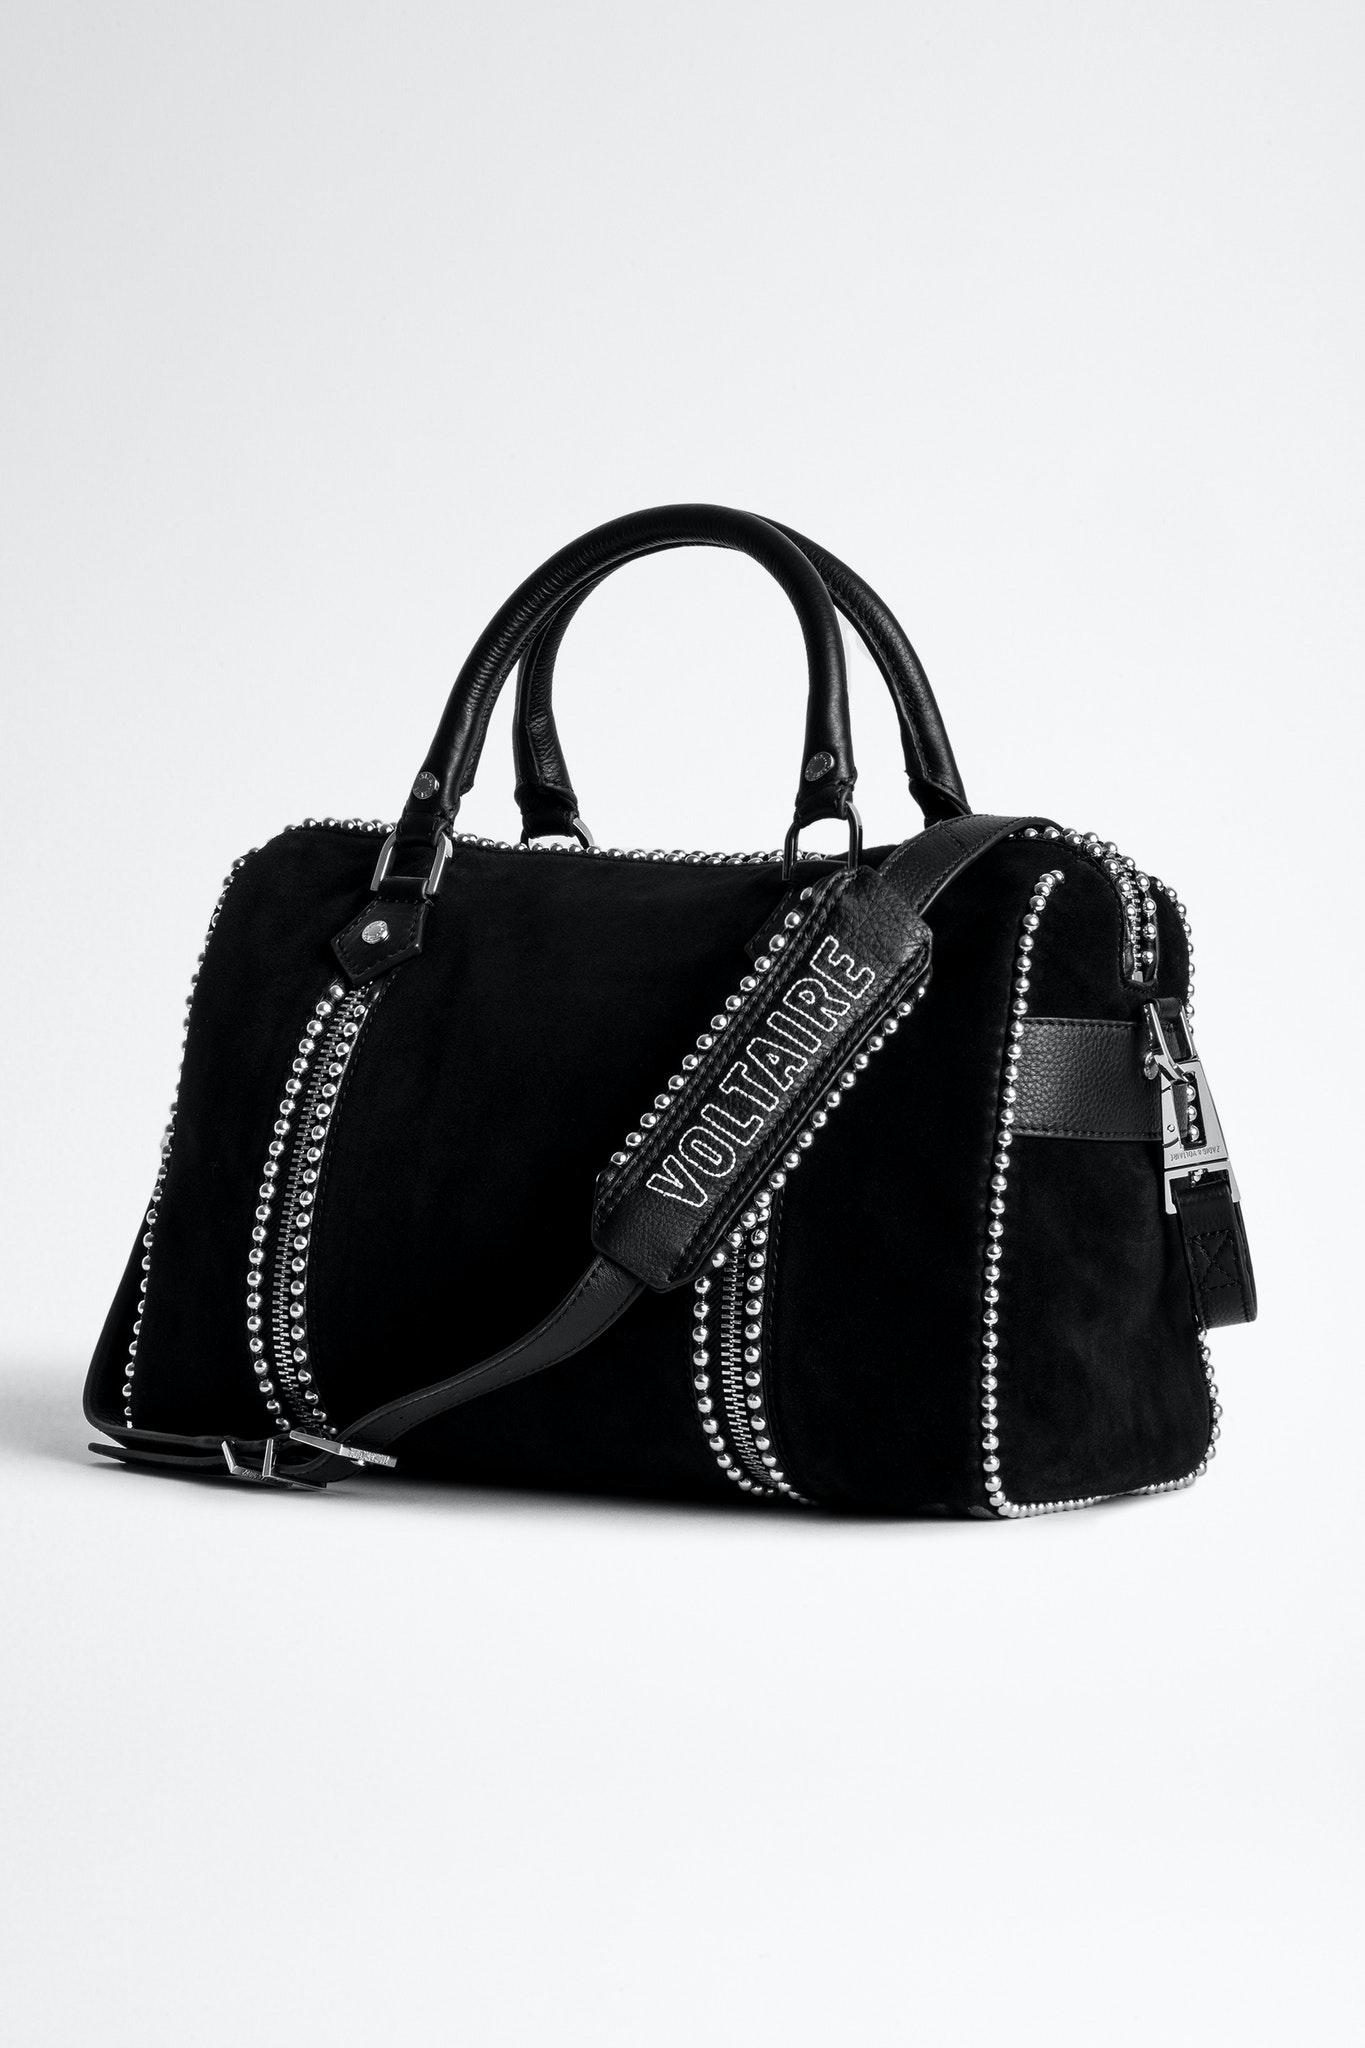 Zadig & Voltaire Sunny Medium Suede Studs Bag in Black | Lyst UK